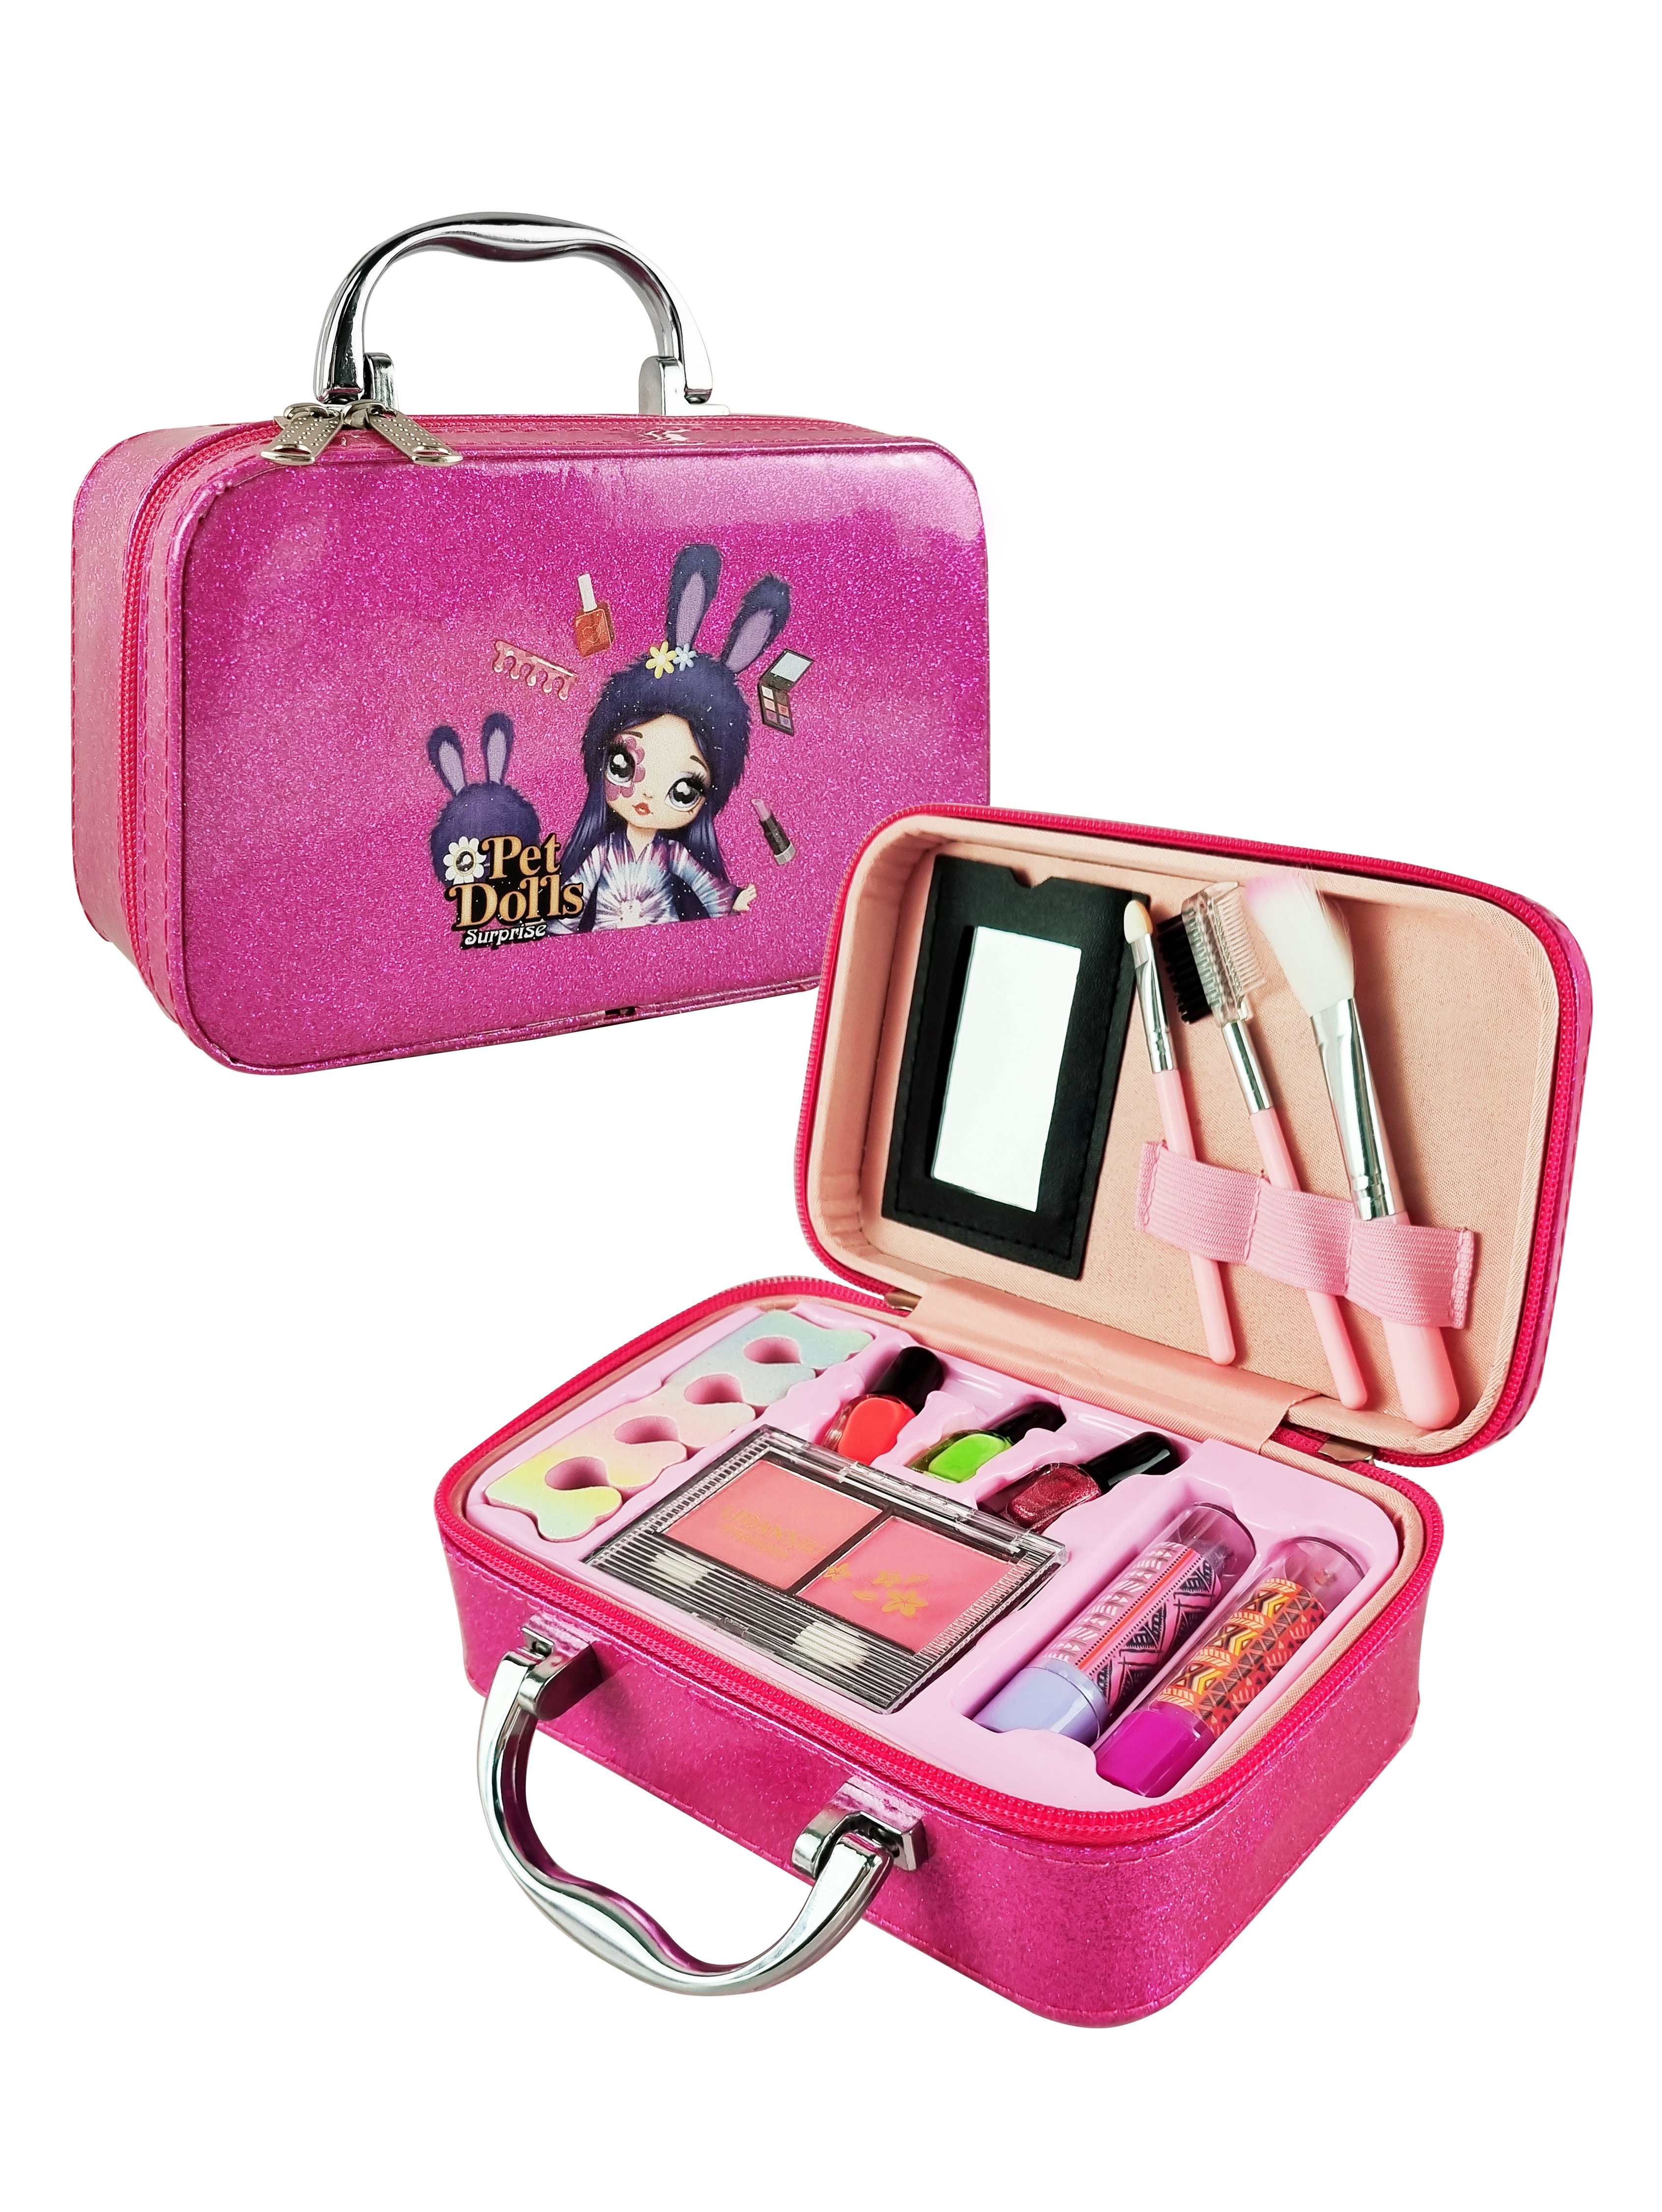 Детская декоративная косметика PetDolls, 12 предметов, пурпурный чемоданчик 5-905-1 шоколадная диета и косметика